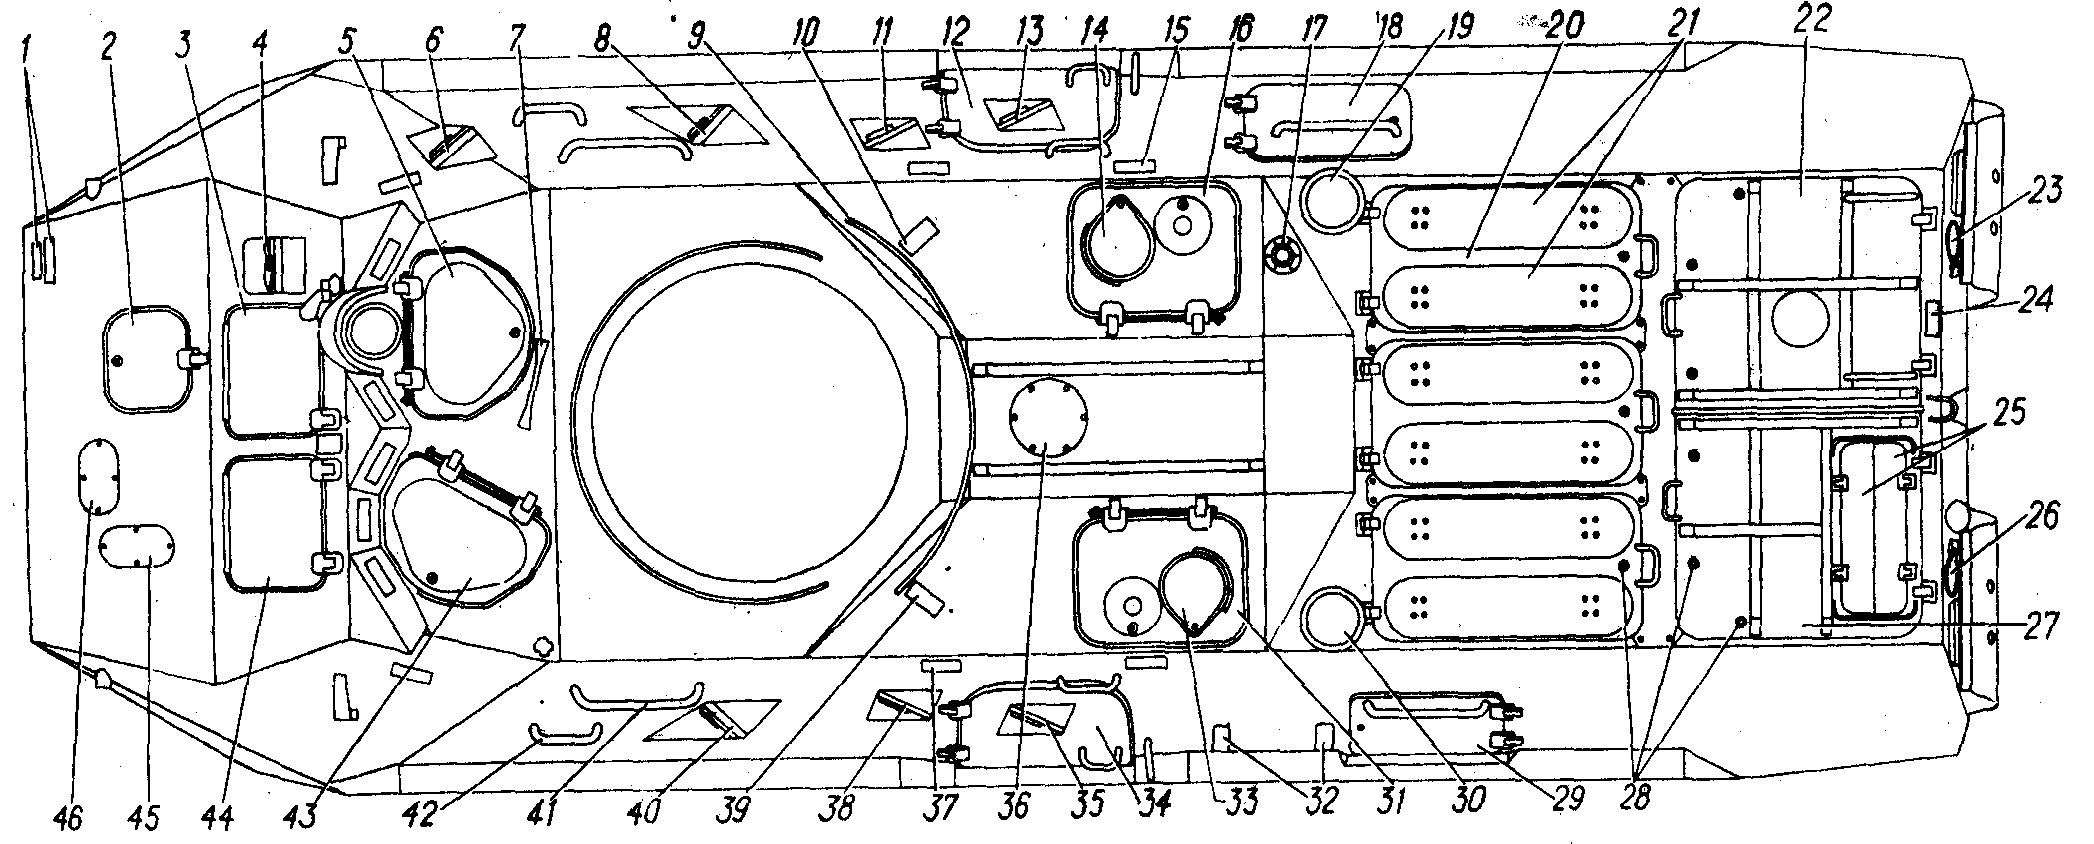 Схема башни бтр 82а